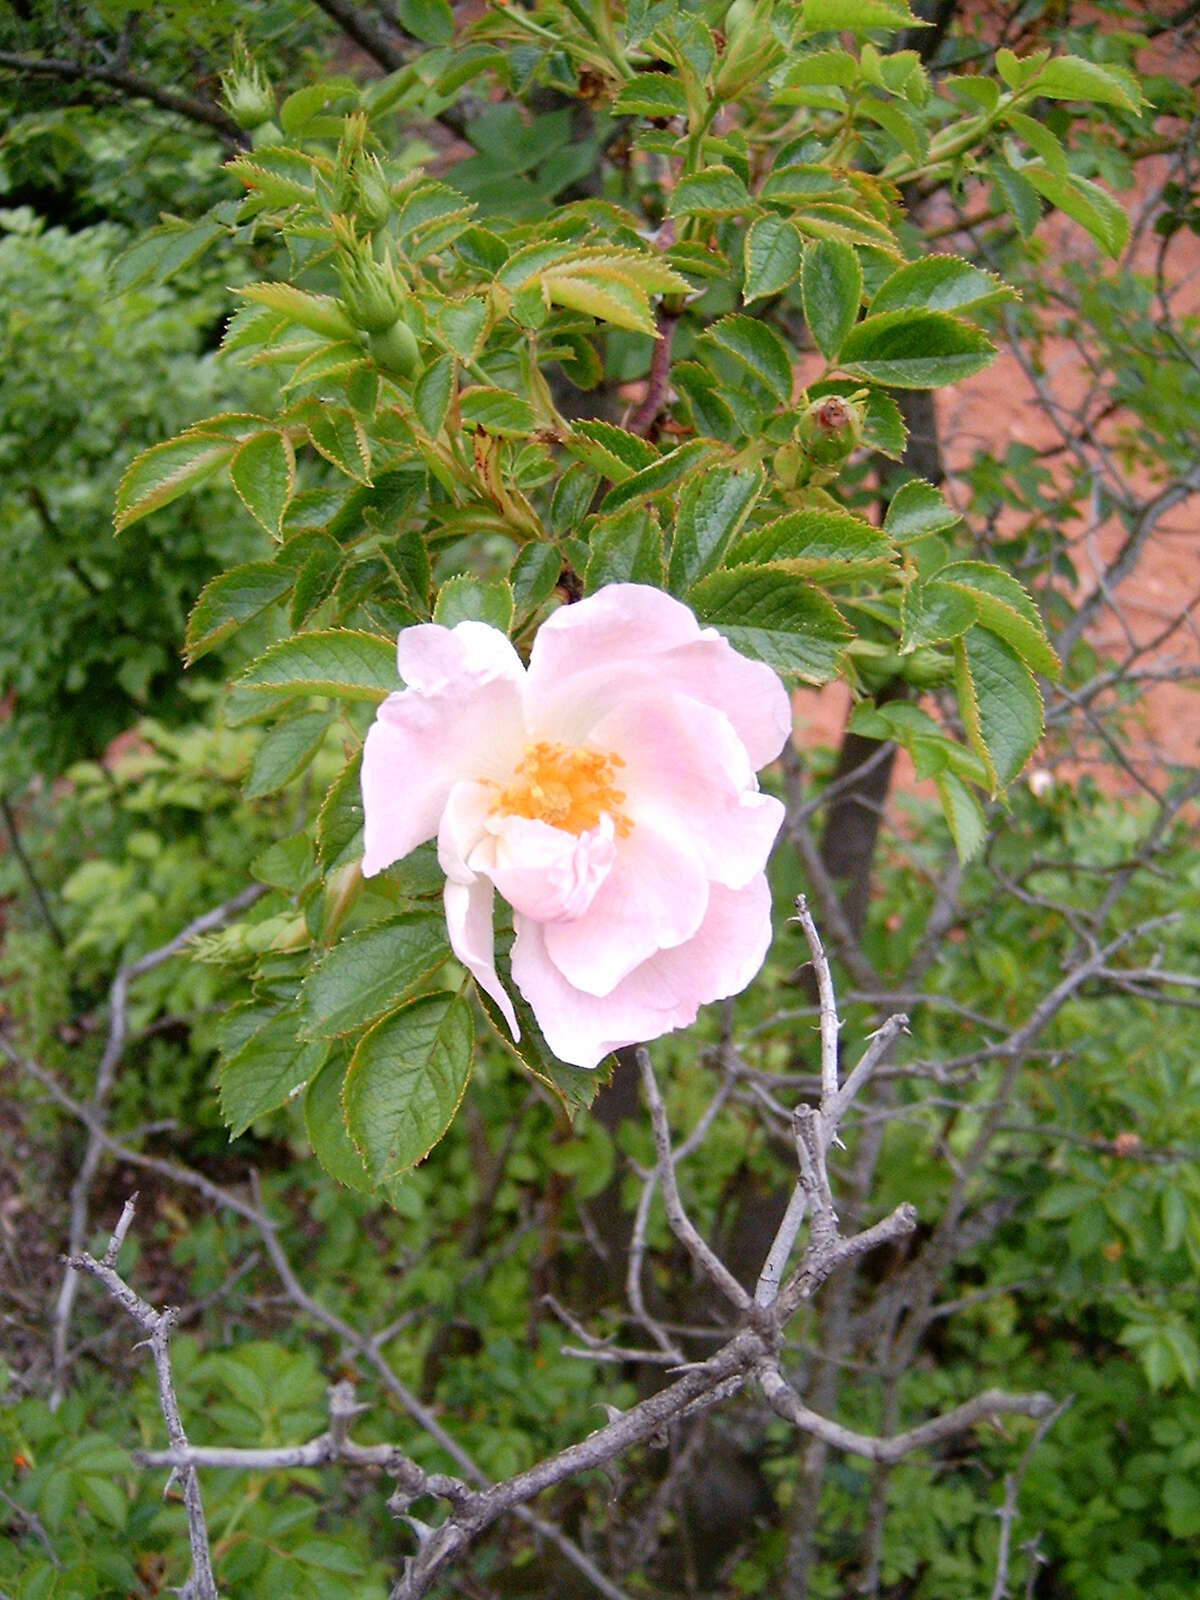 Image of dog rose